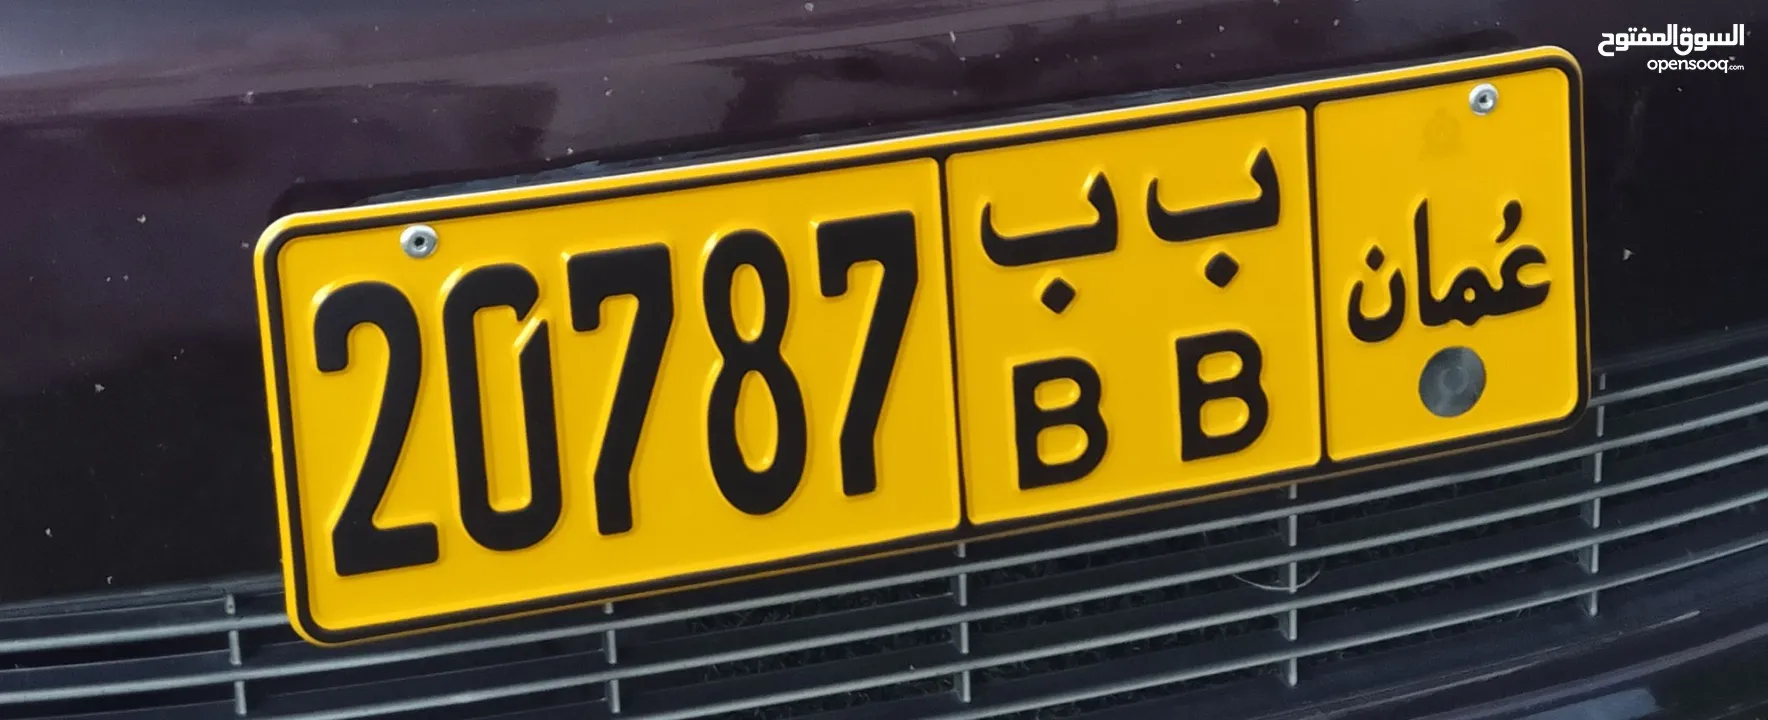 رقم سيارة خماسي 20787  BBمميز للبيع رمزين متشابهين